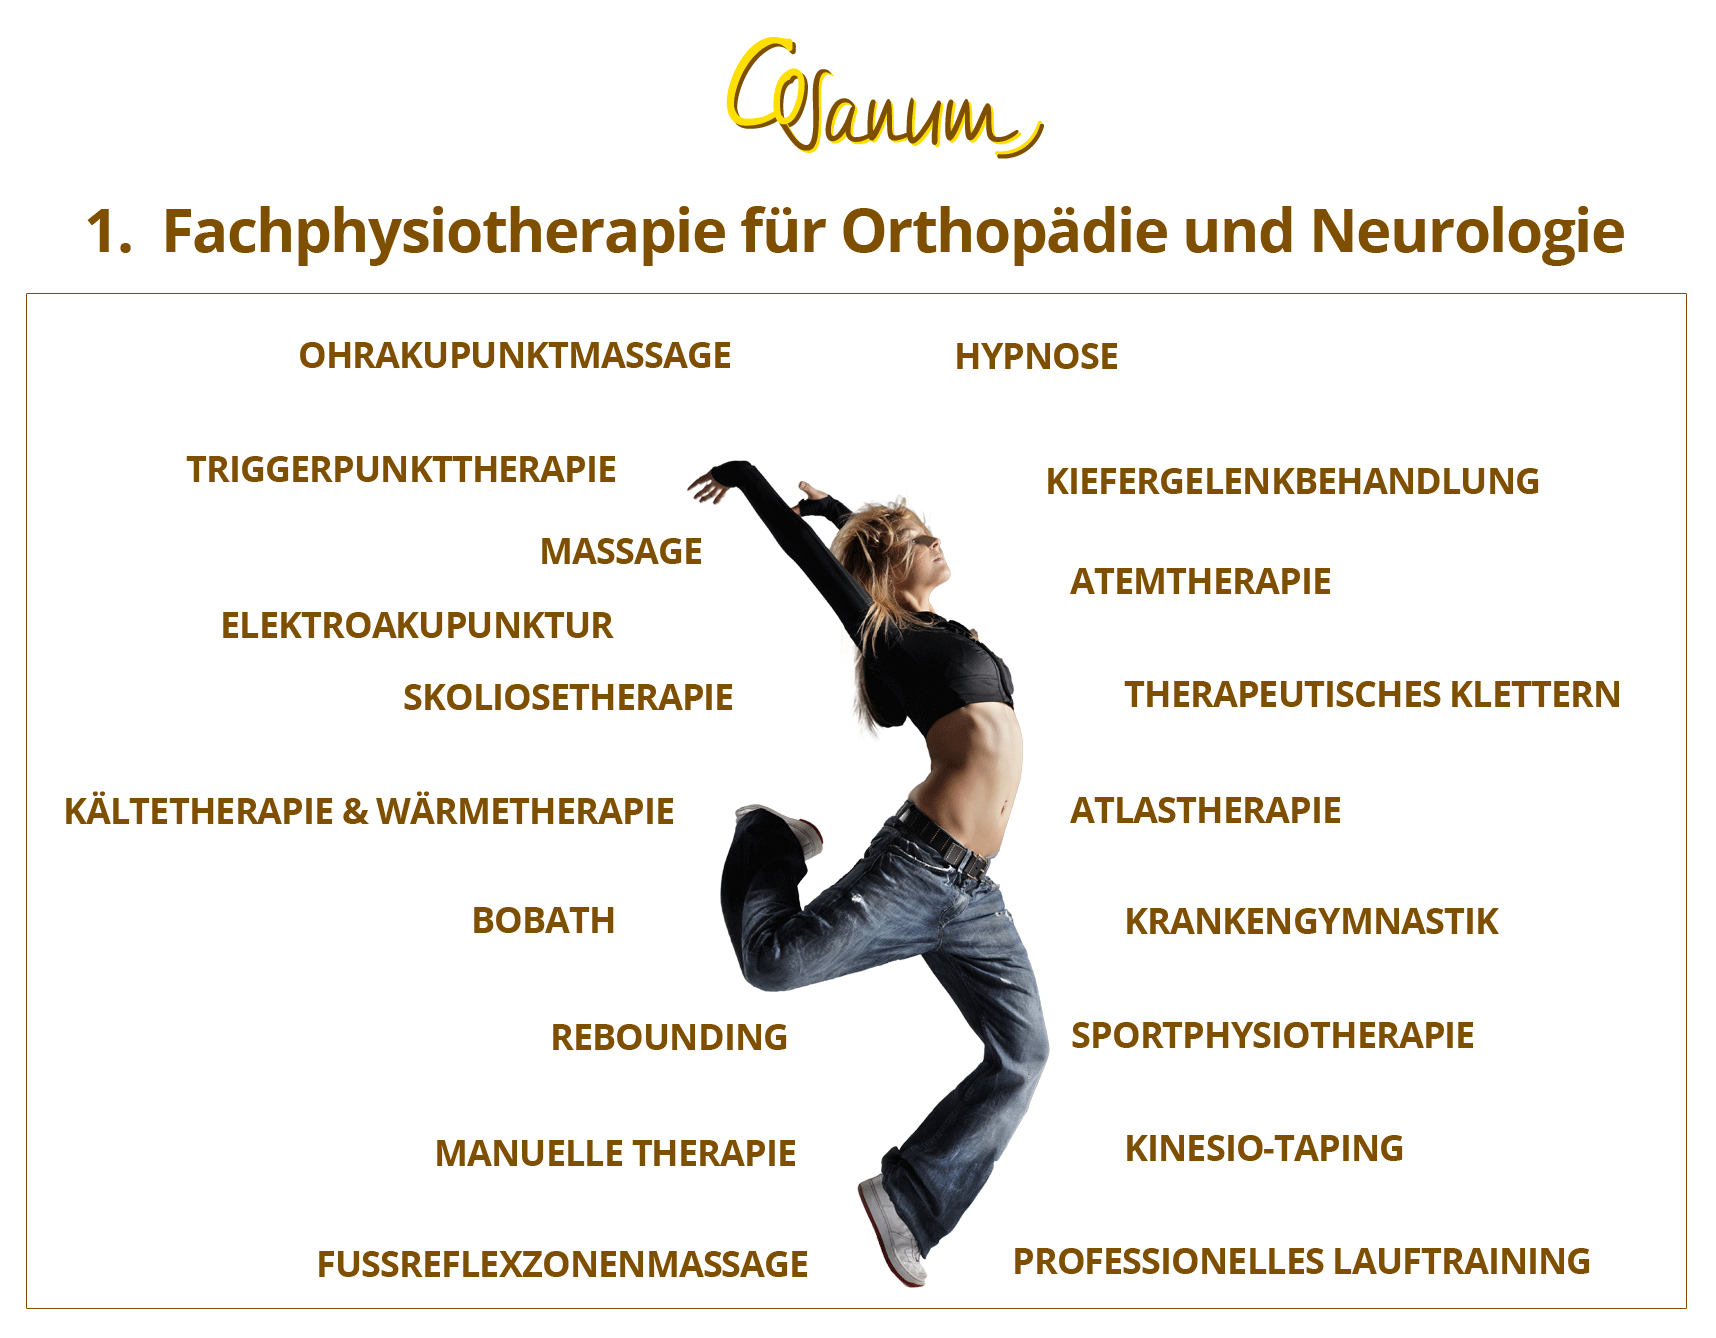 1. Fachpysiotherapie für Orthopädie und Neurologie